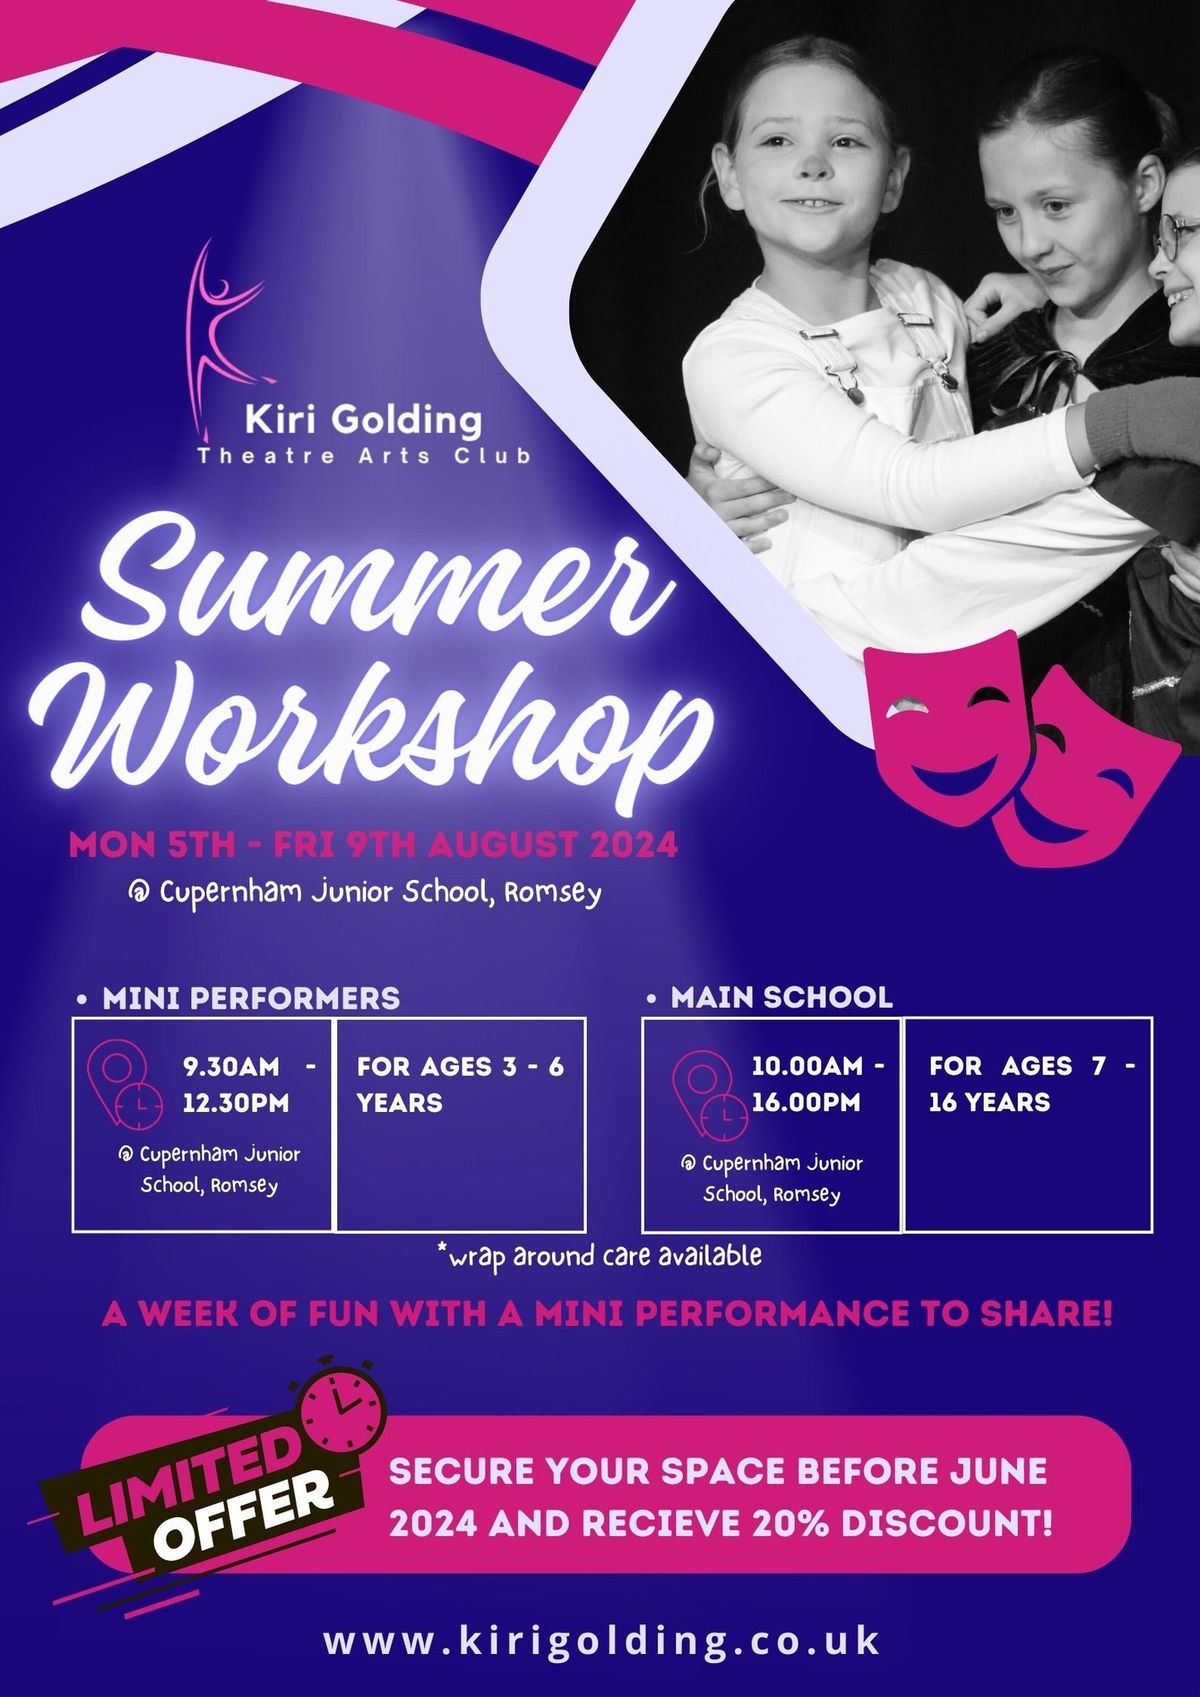 KG Theatre Arts Summer Workshop 2034